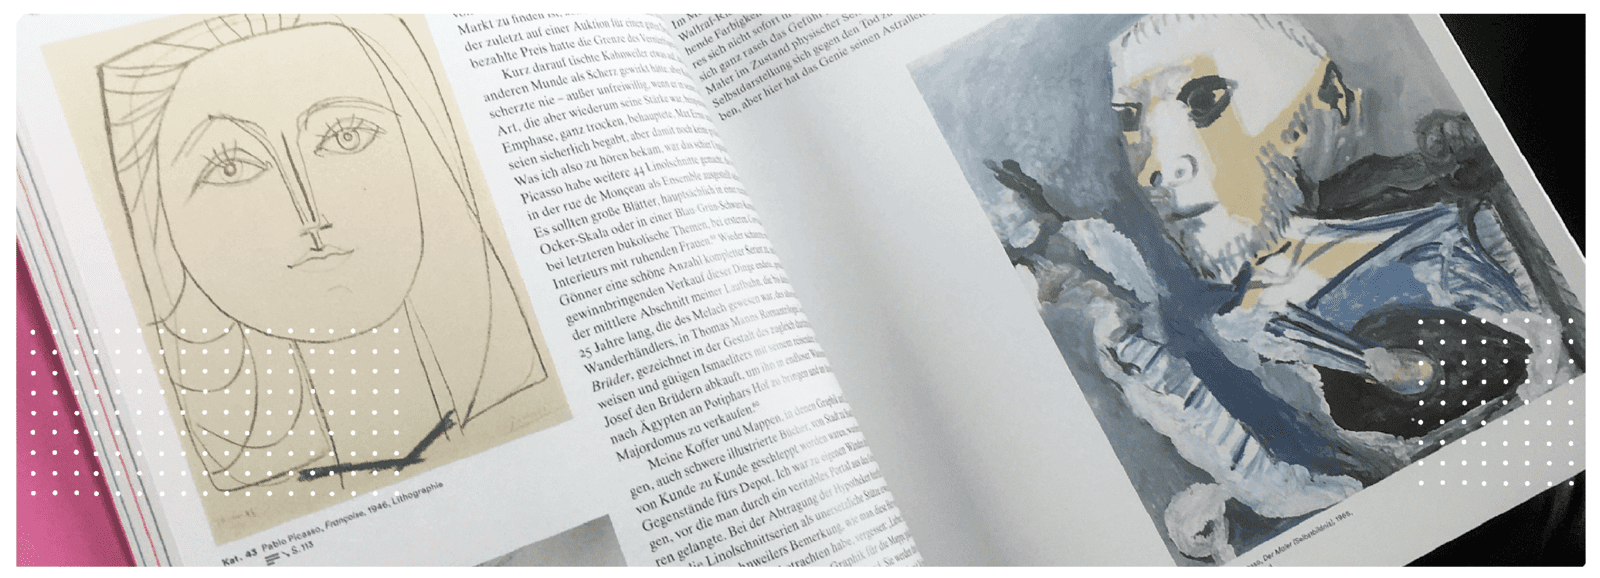 Kulturgutscanner am Werk in der Kunsthalle Bremen: Die Picasso-Connection erleben